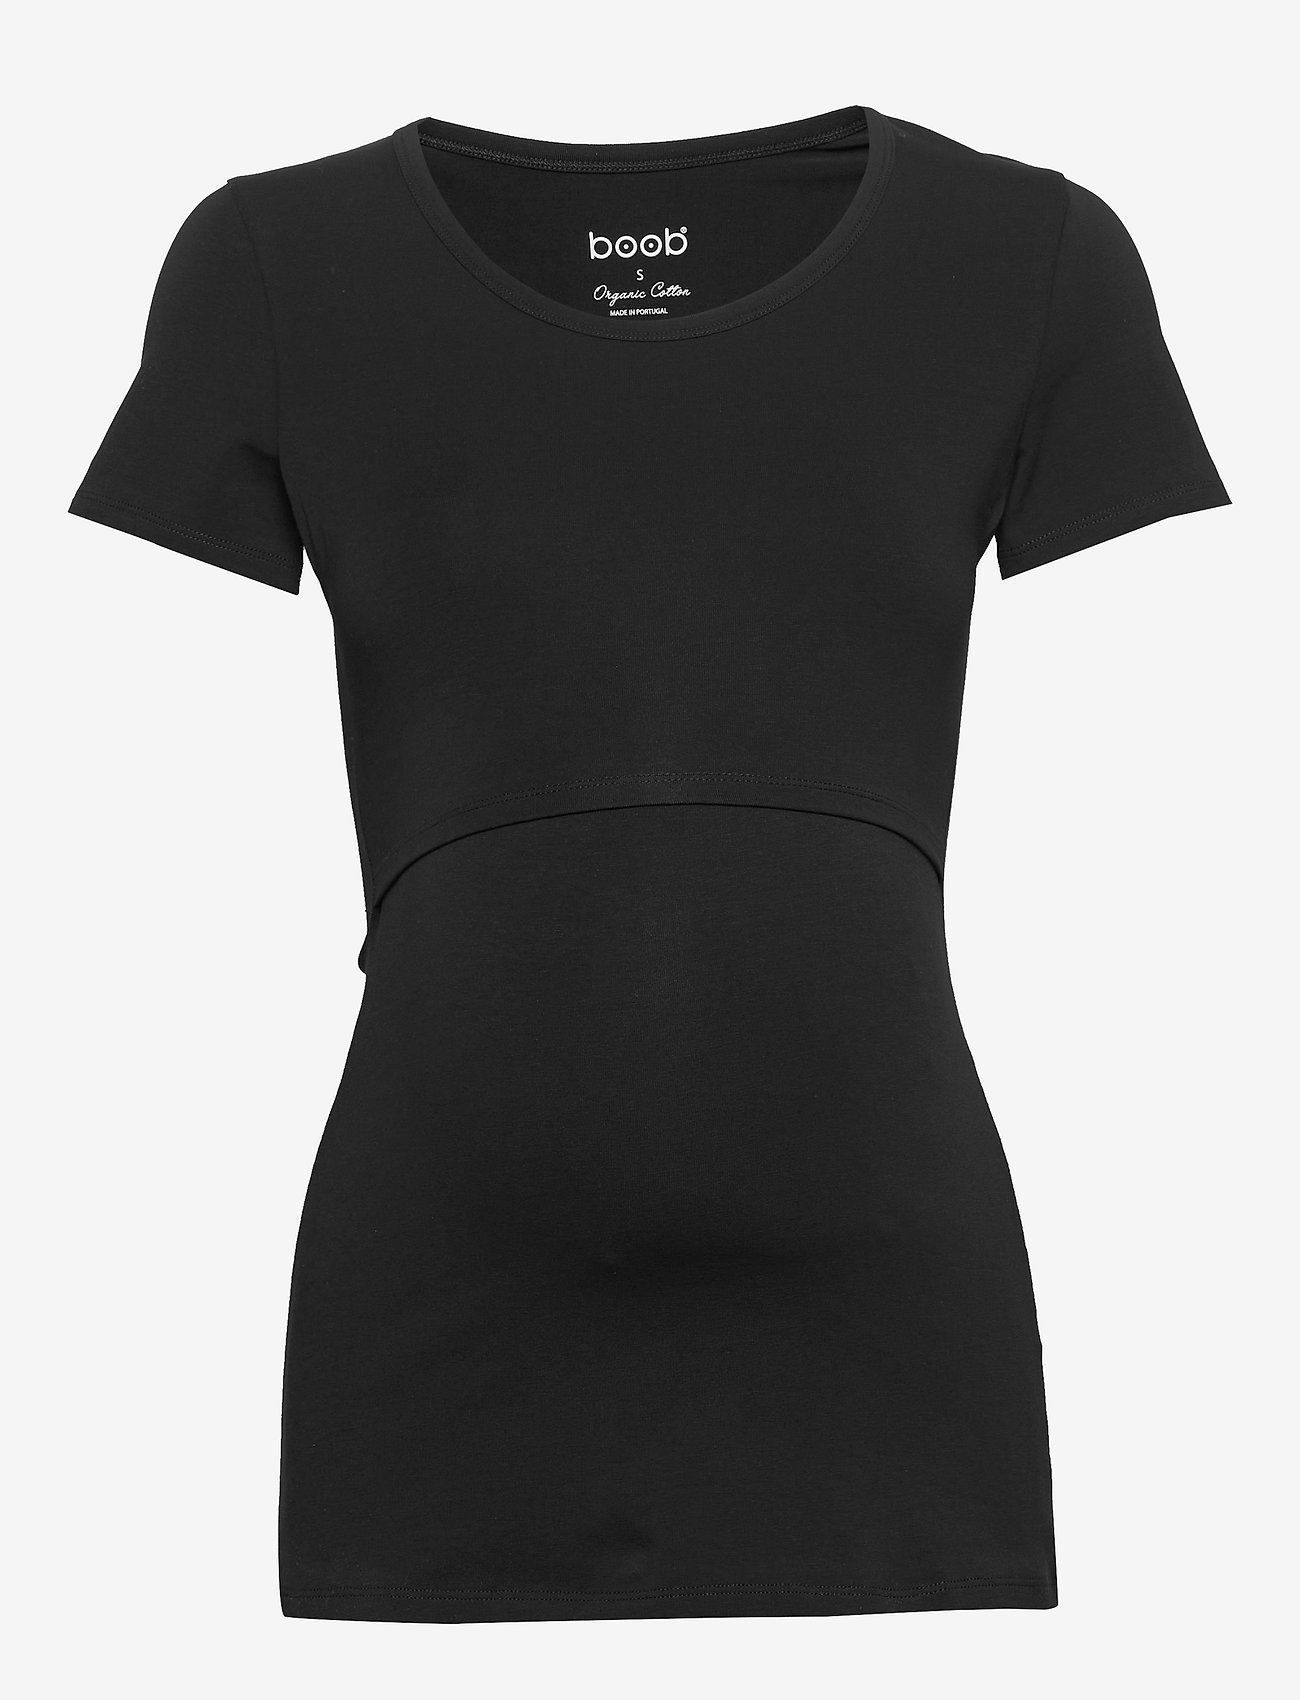 Boob - Classic s/s top - t-shirt & tops - black - 0